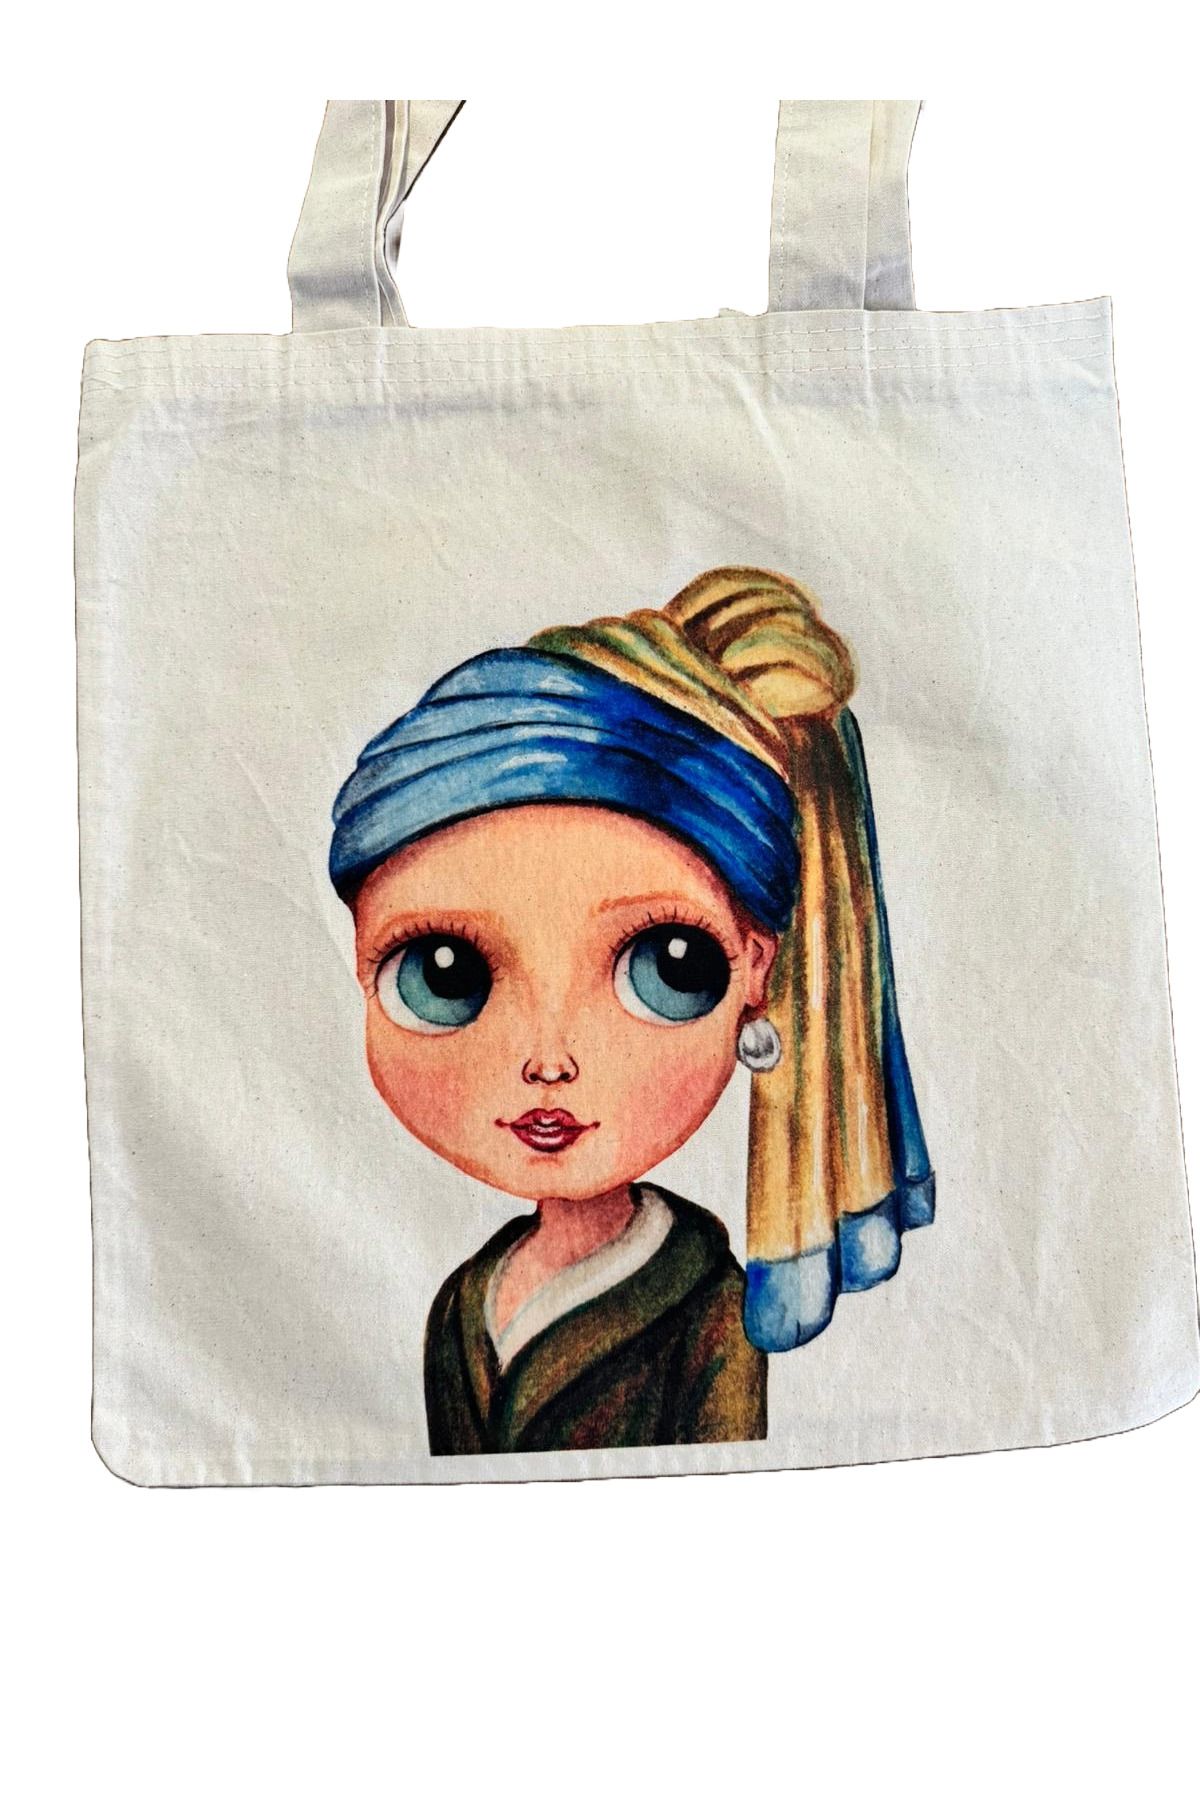 Kıvırcık Senyorita TM Bez Çanta - İnci Küpeli Kız Baskılı Bez Çanta - Desenli Omuz Çantası - Keten Çanta